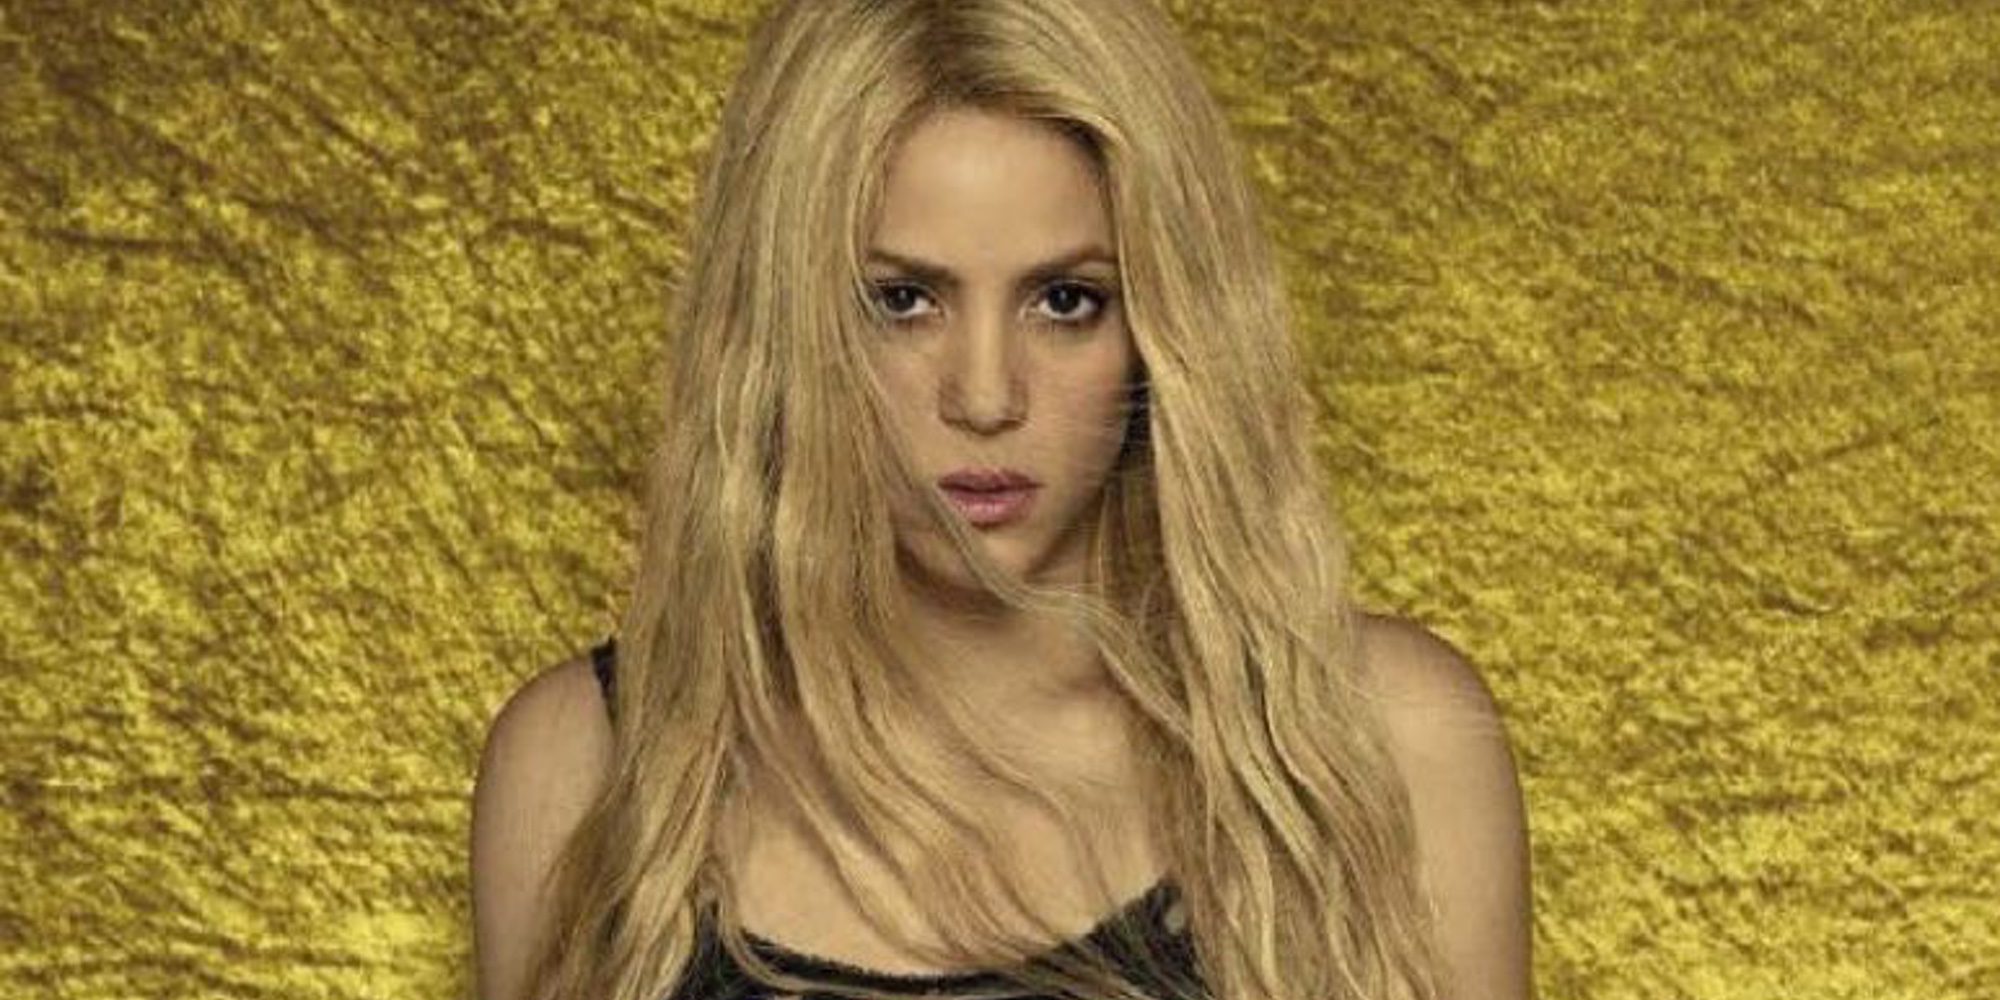 Shakira, muy agradecida a Antonella Roccuzzo y Leo Messi tras acudir a su boda mientras le llueven críticas